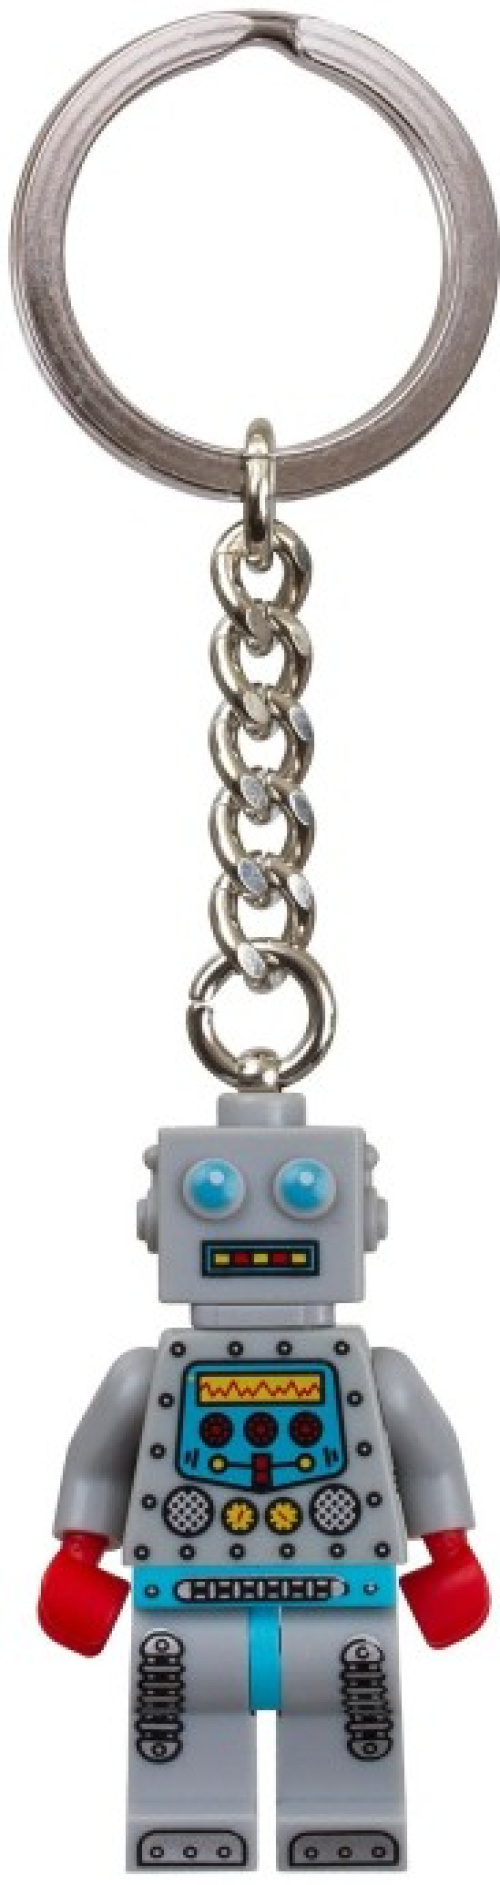 851395-1 Robot Key Chain